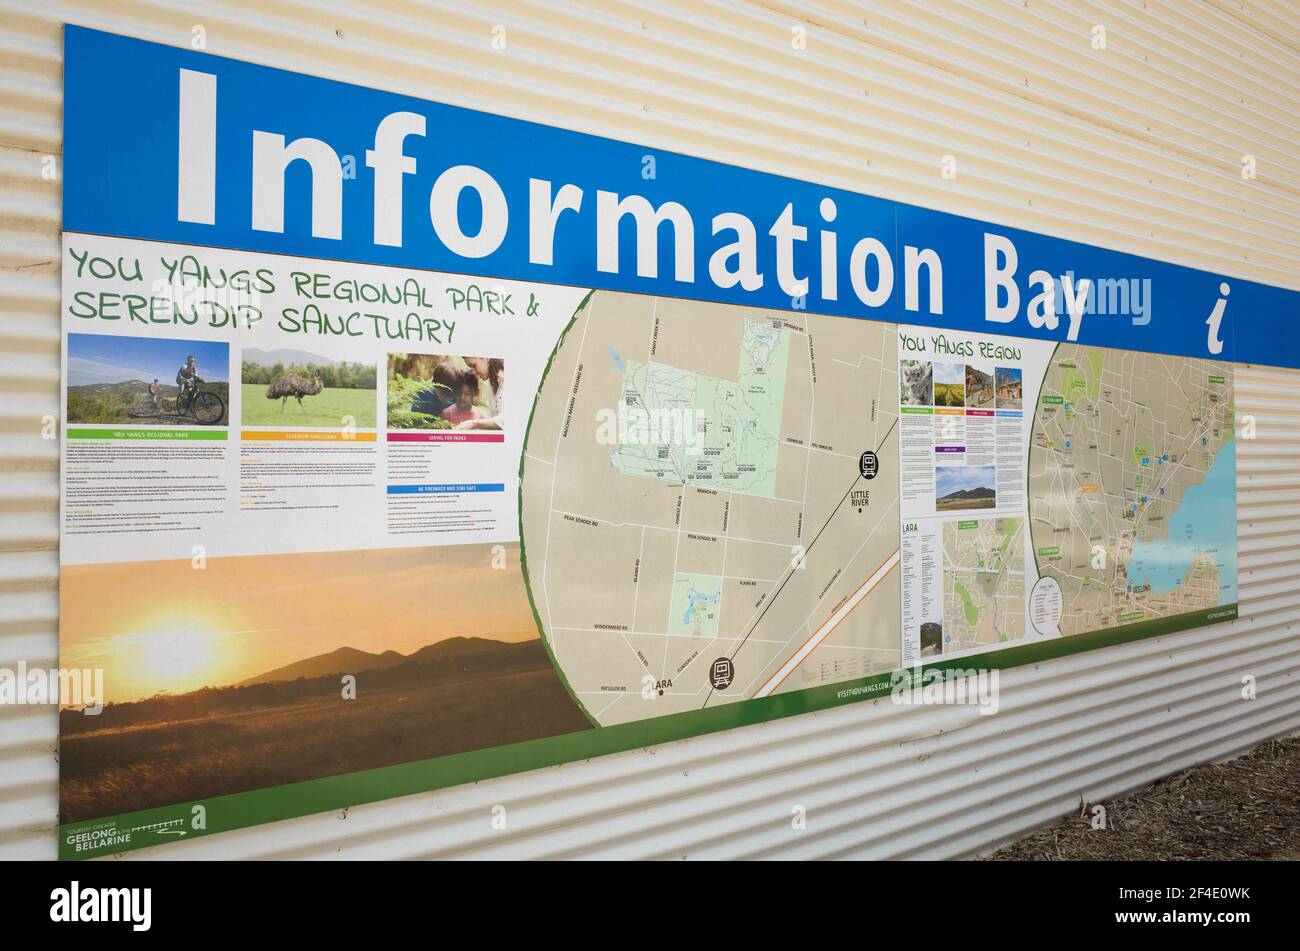 La baia di informazioni turistiche a Lara con le attrazioni turistiche locali e le mappe di voi Youngs Regional Park e Serendip Sanctuary. Foto Stock